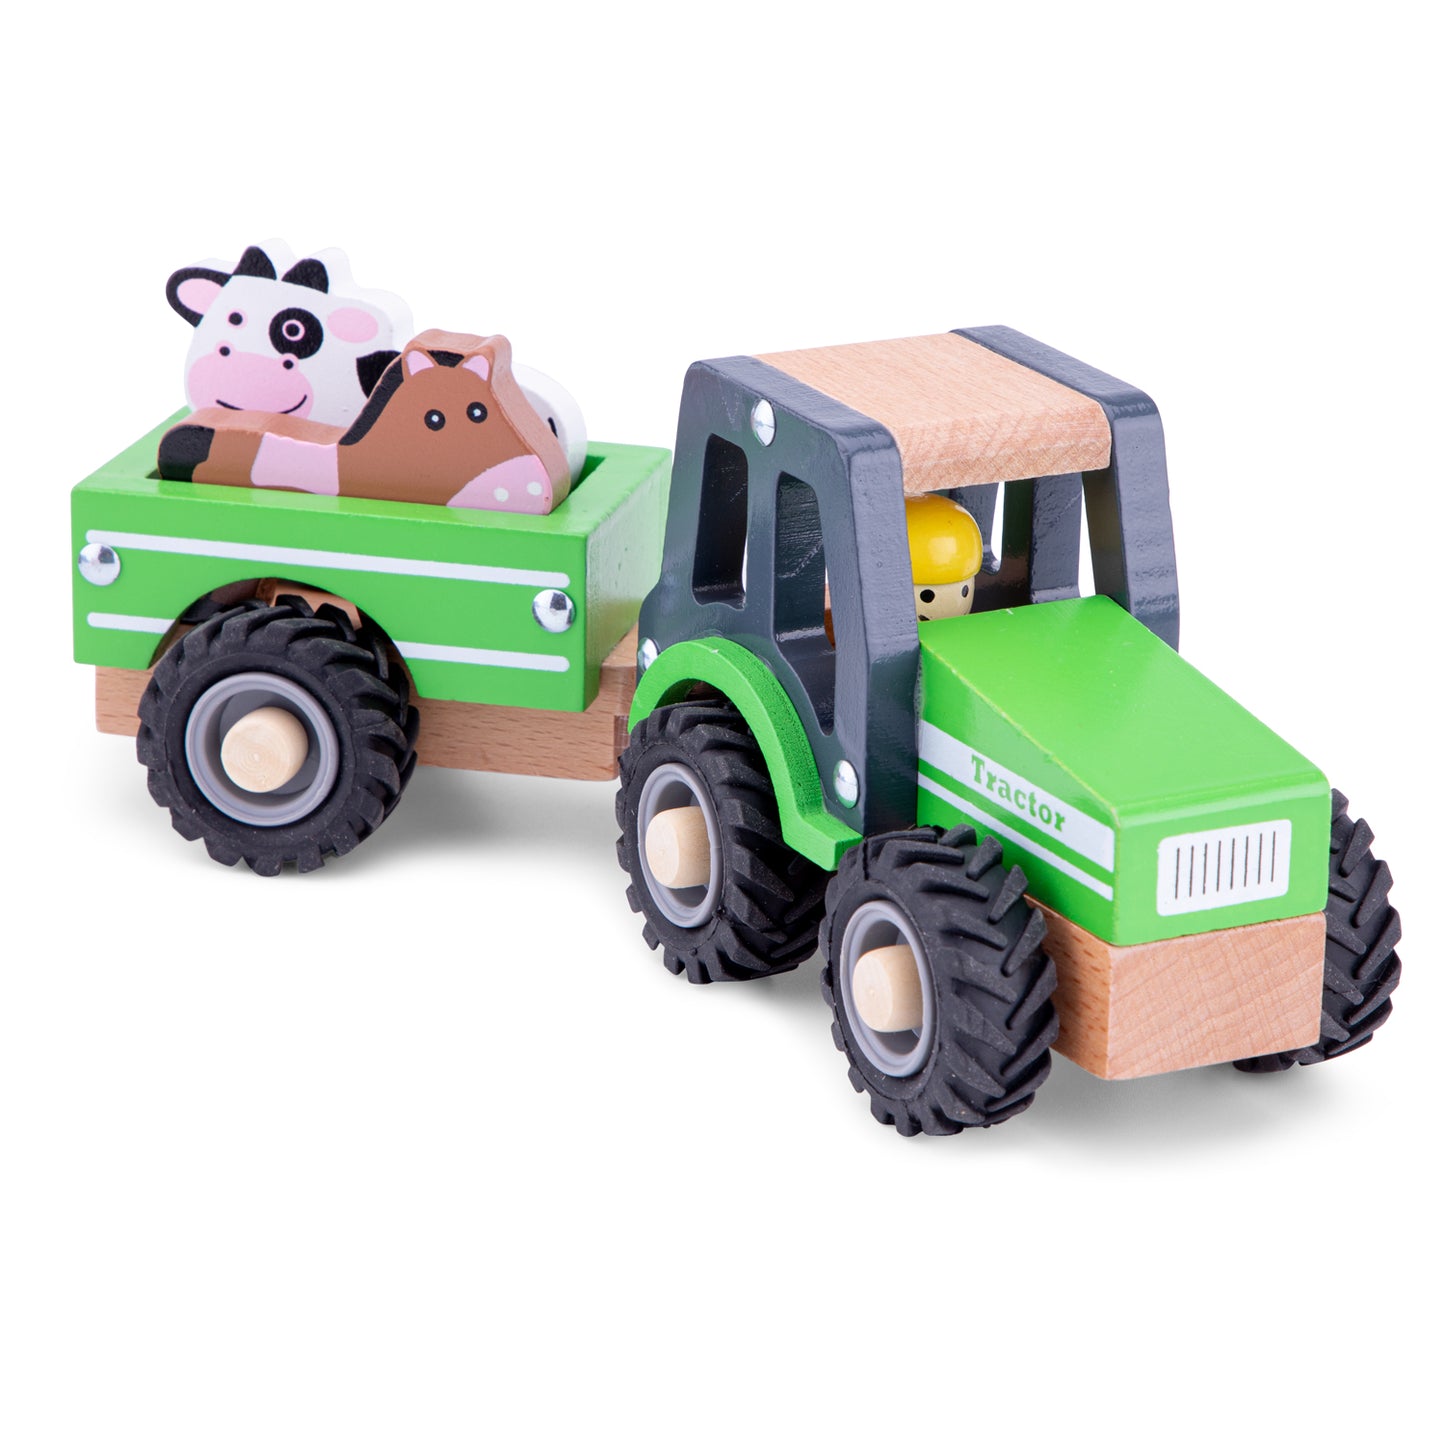 Tractor met aanhanger - Groen